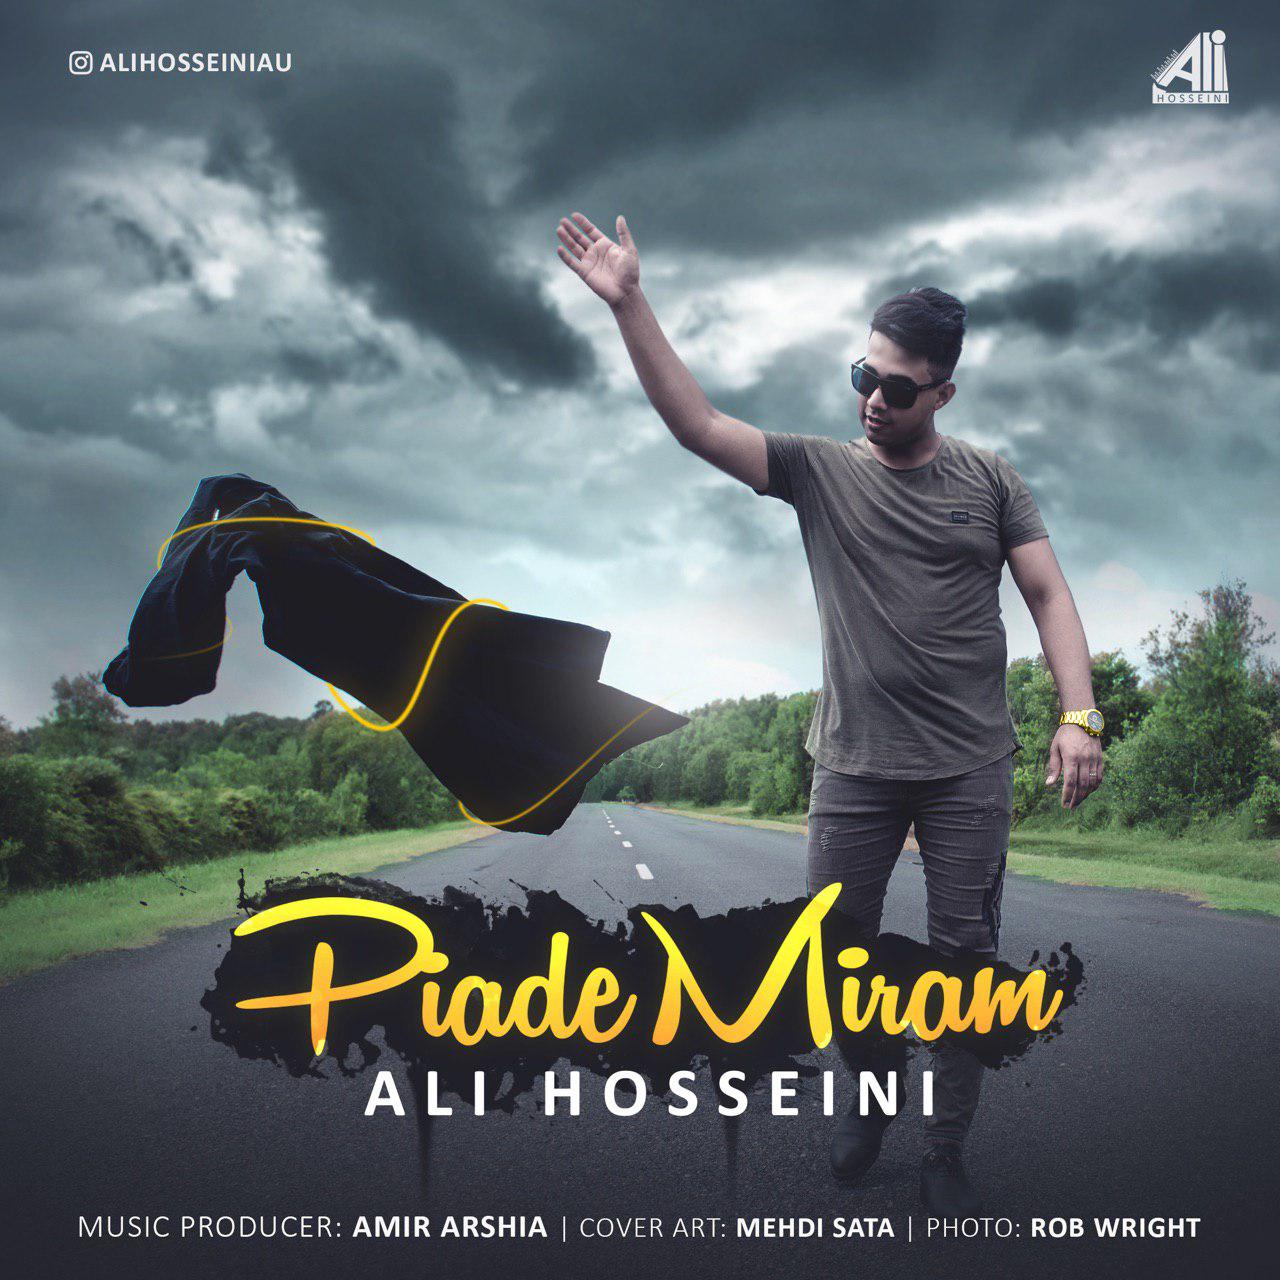  دانلود آهنگ جدید علی حسینی - پیاده میرم | Download New Music By Ali Hosseini - Piade Miram